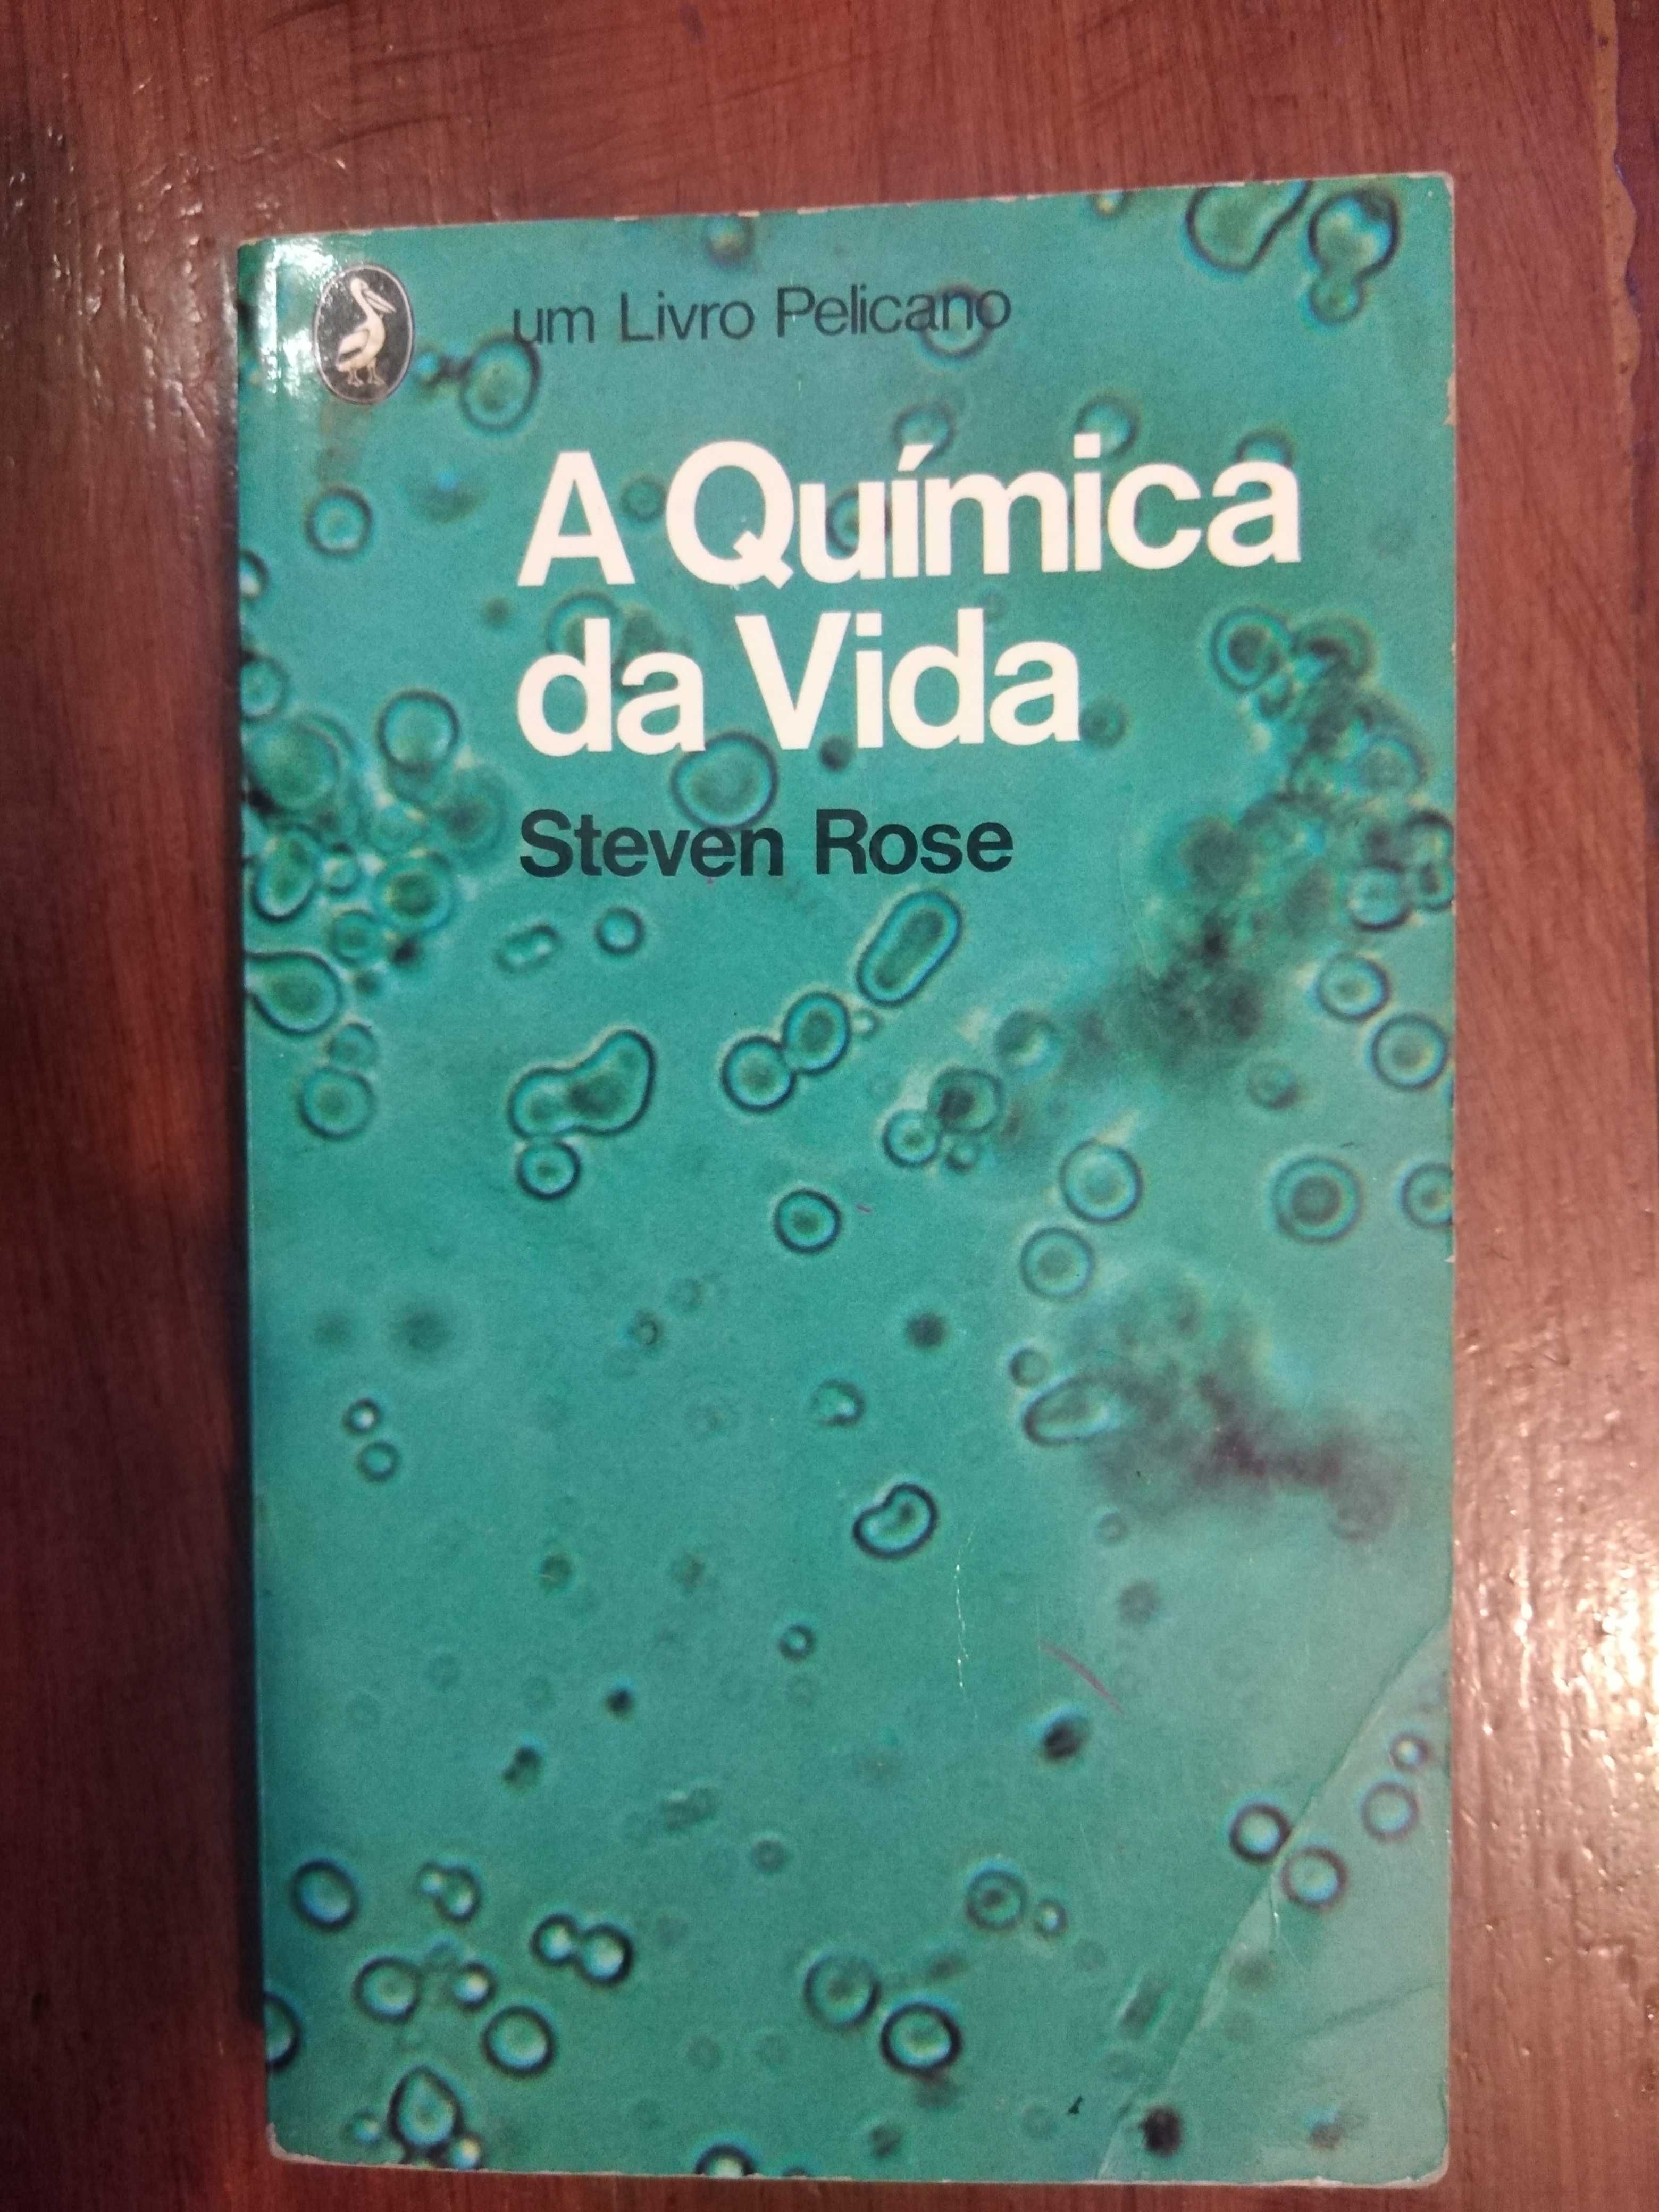 Steven Rose - A Química da vida